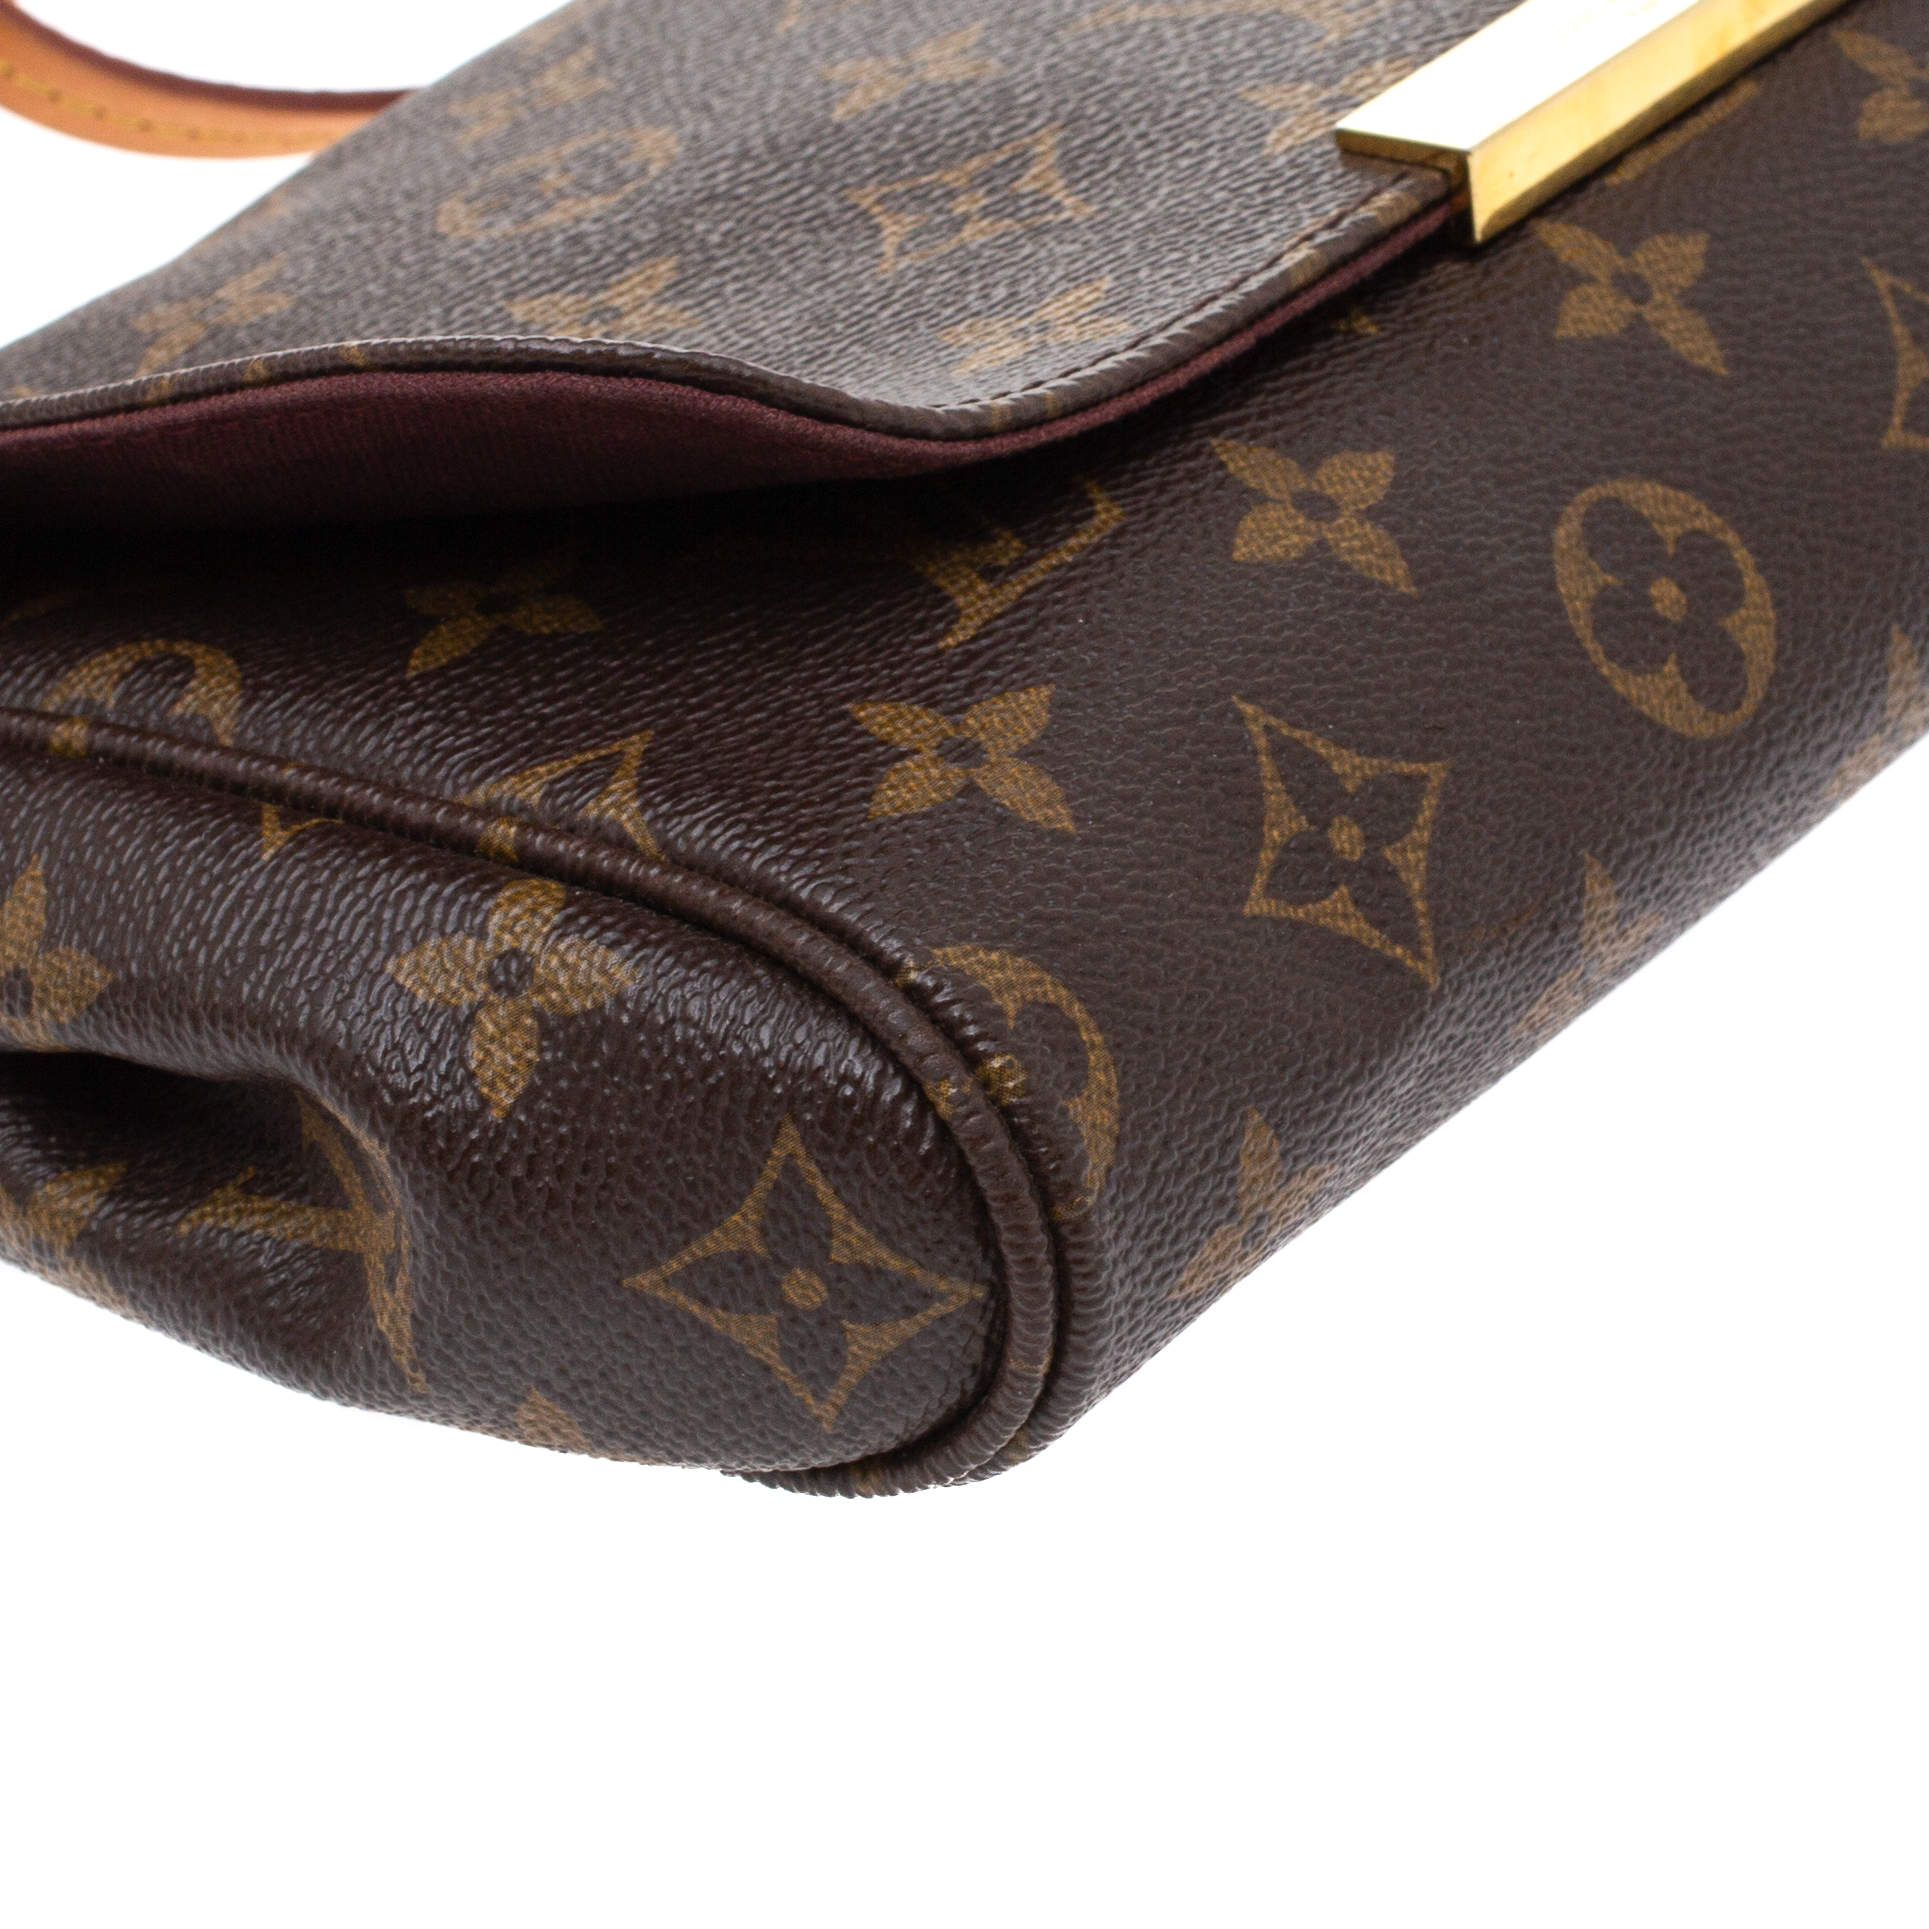 Louis Vuitton e Crossbody Bag - Brown Crossbody Bags, Handbags -  LOU44311